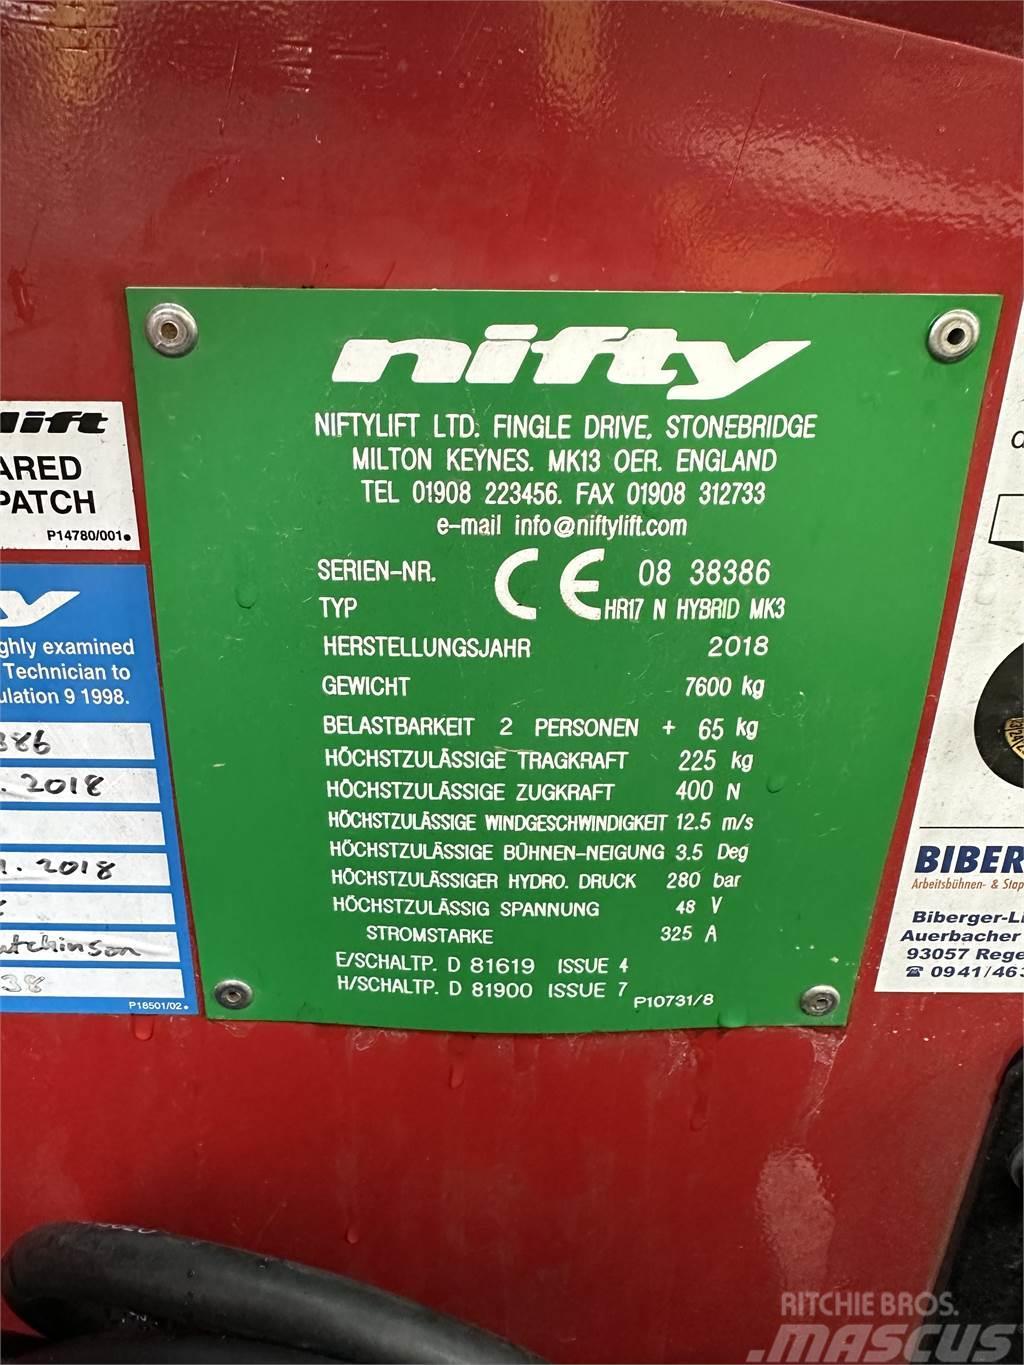 Niftylift HR 17 N HYBRID MK3 Gelenkteleskoparbeitsbühnen